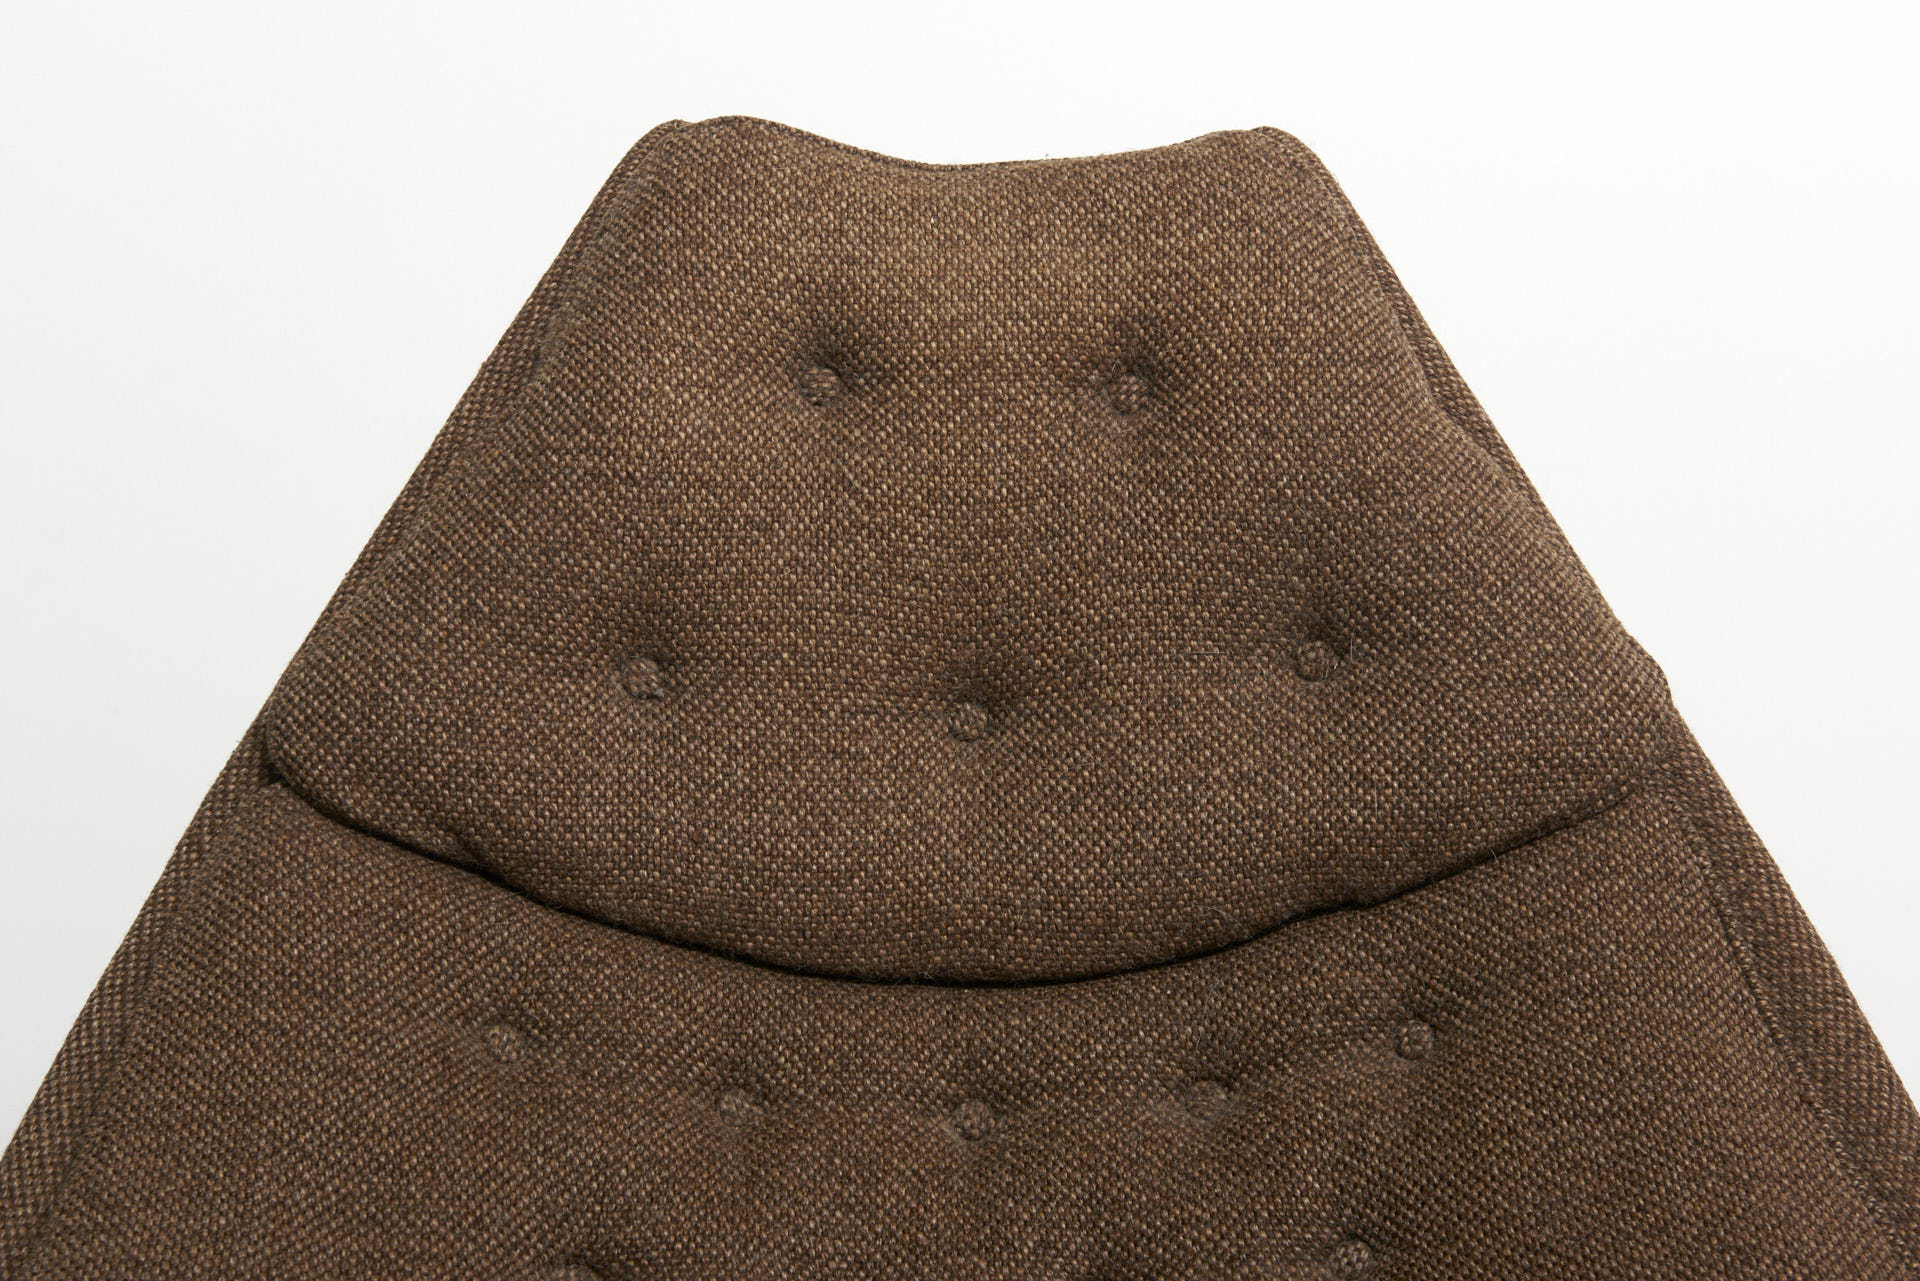 modestfurniture-vintage-2691-geoffrey-harcourt-lounge-chair-artifort-brown-fabric-f51104